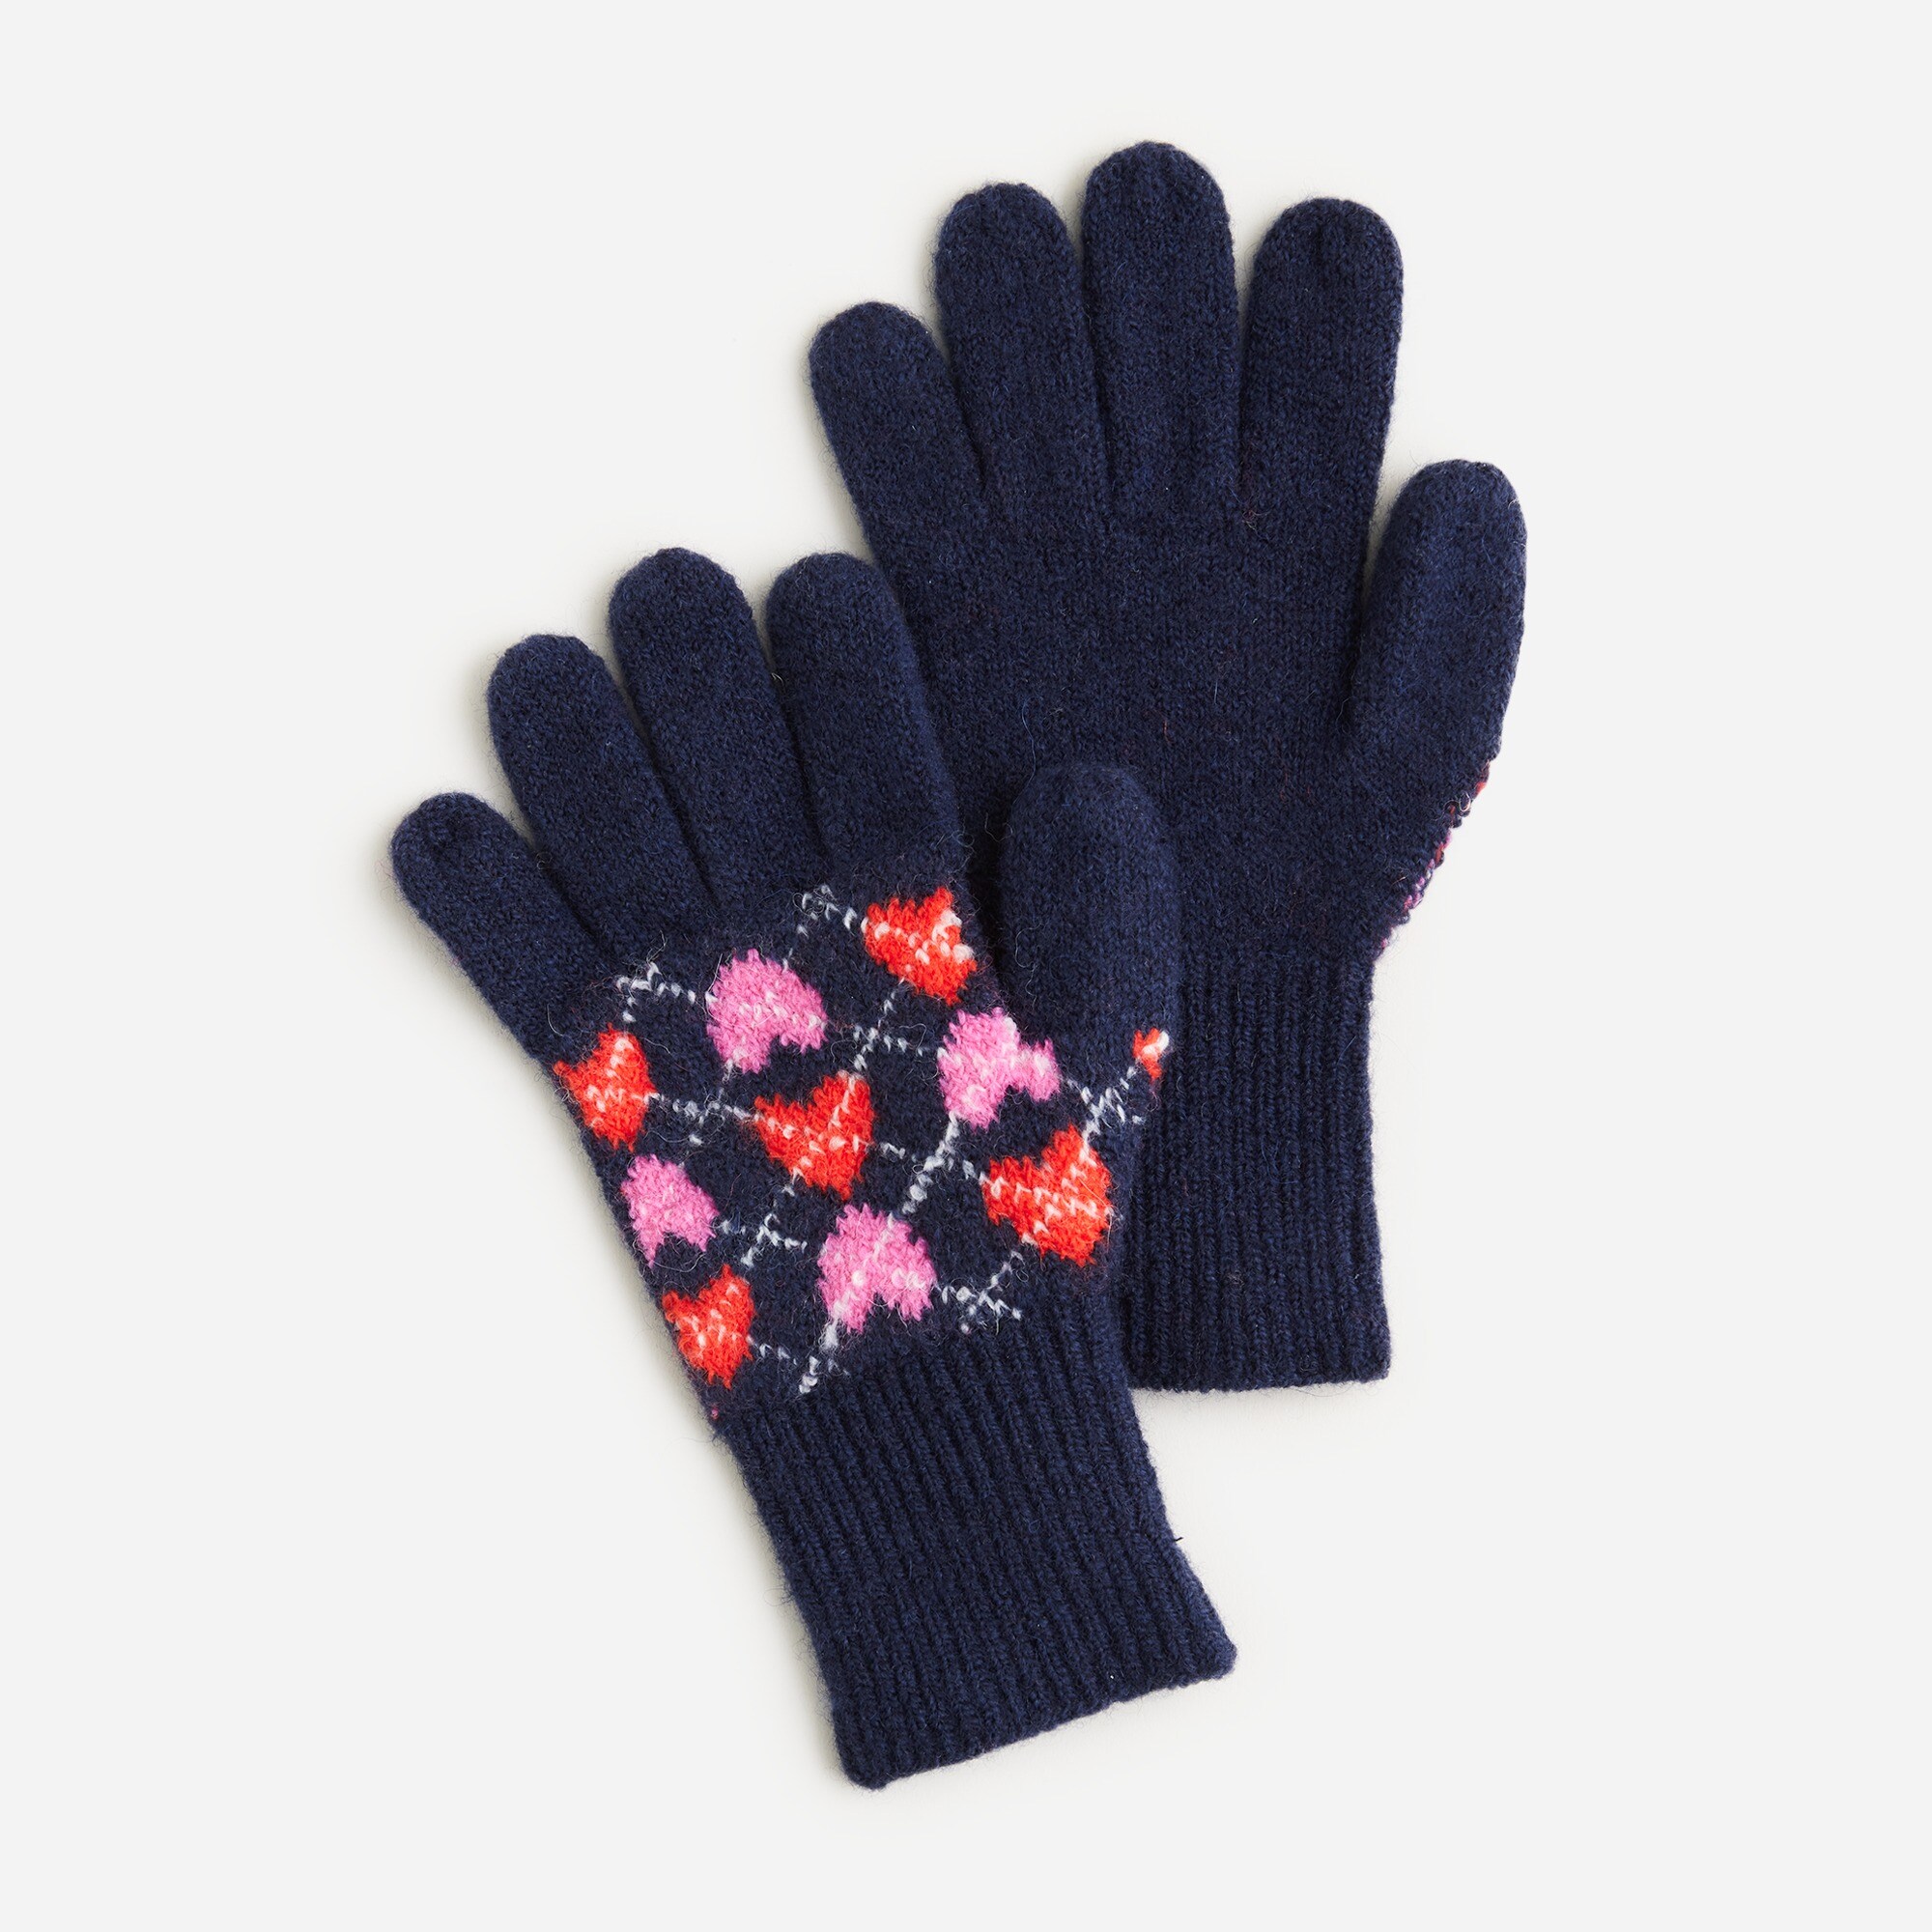  Girls' heart argyle gloves in supersoft yarn